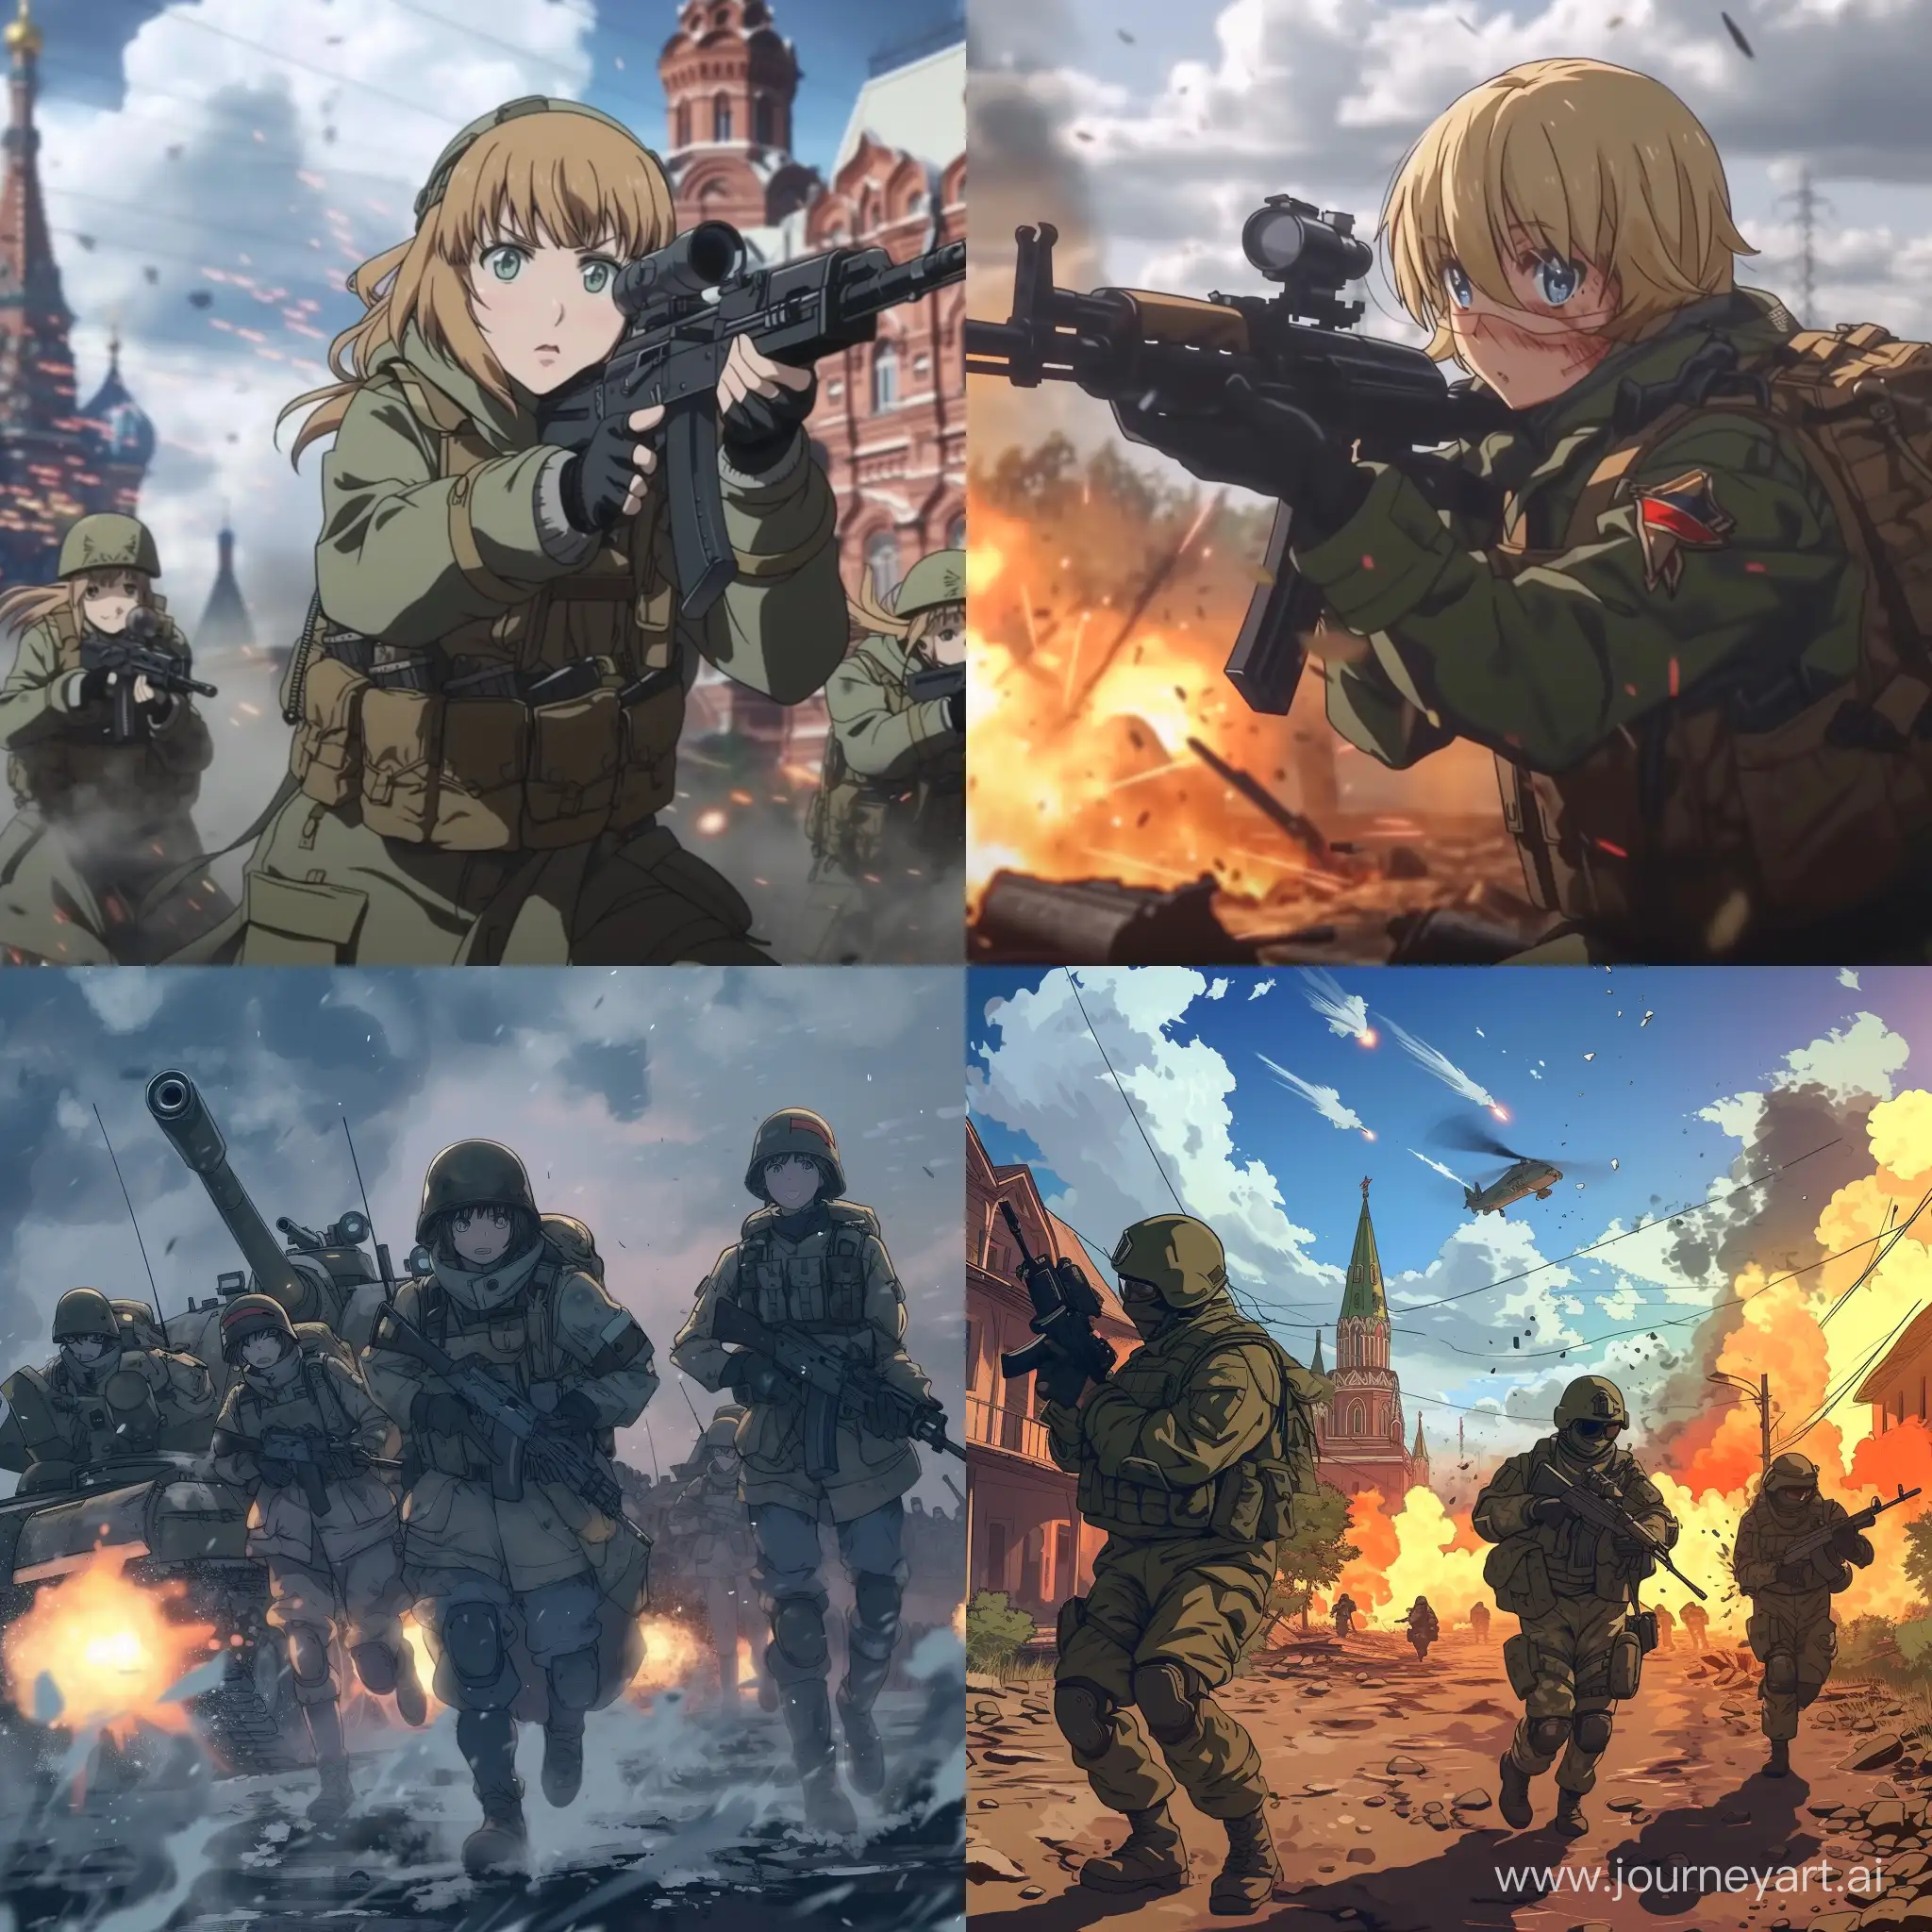 AnimeStyle-War-Russia-vs-Ukraine-Clash-in-Vibrant-Animation